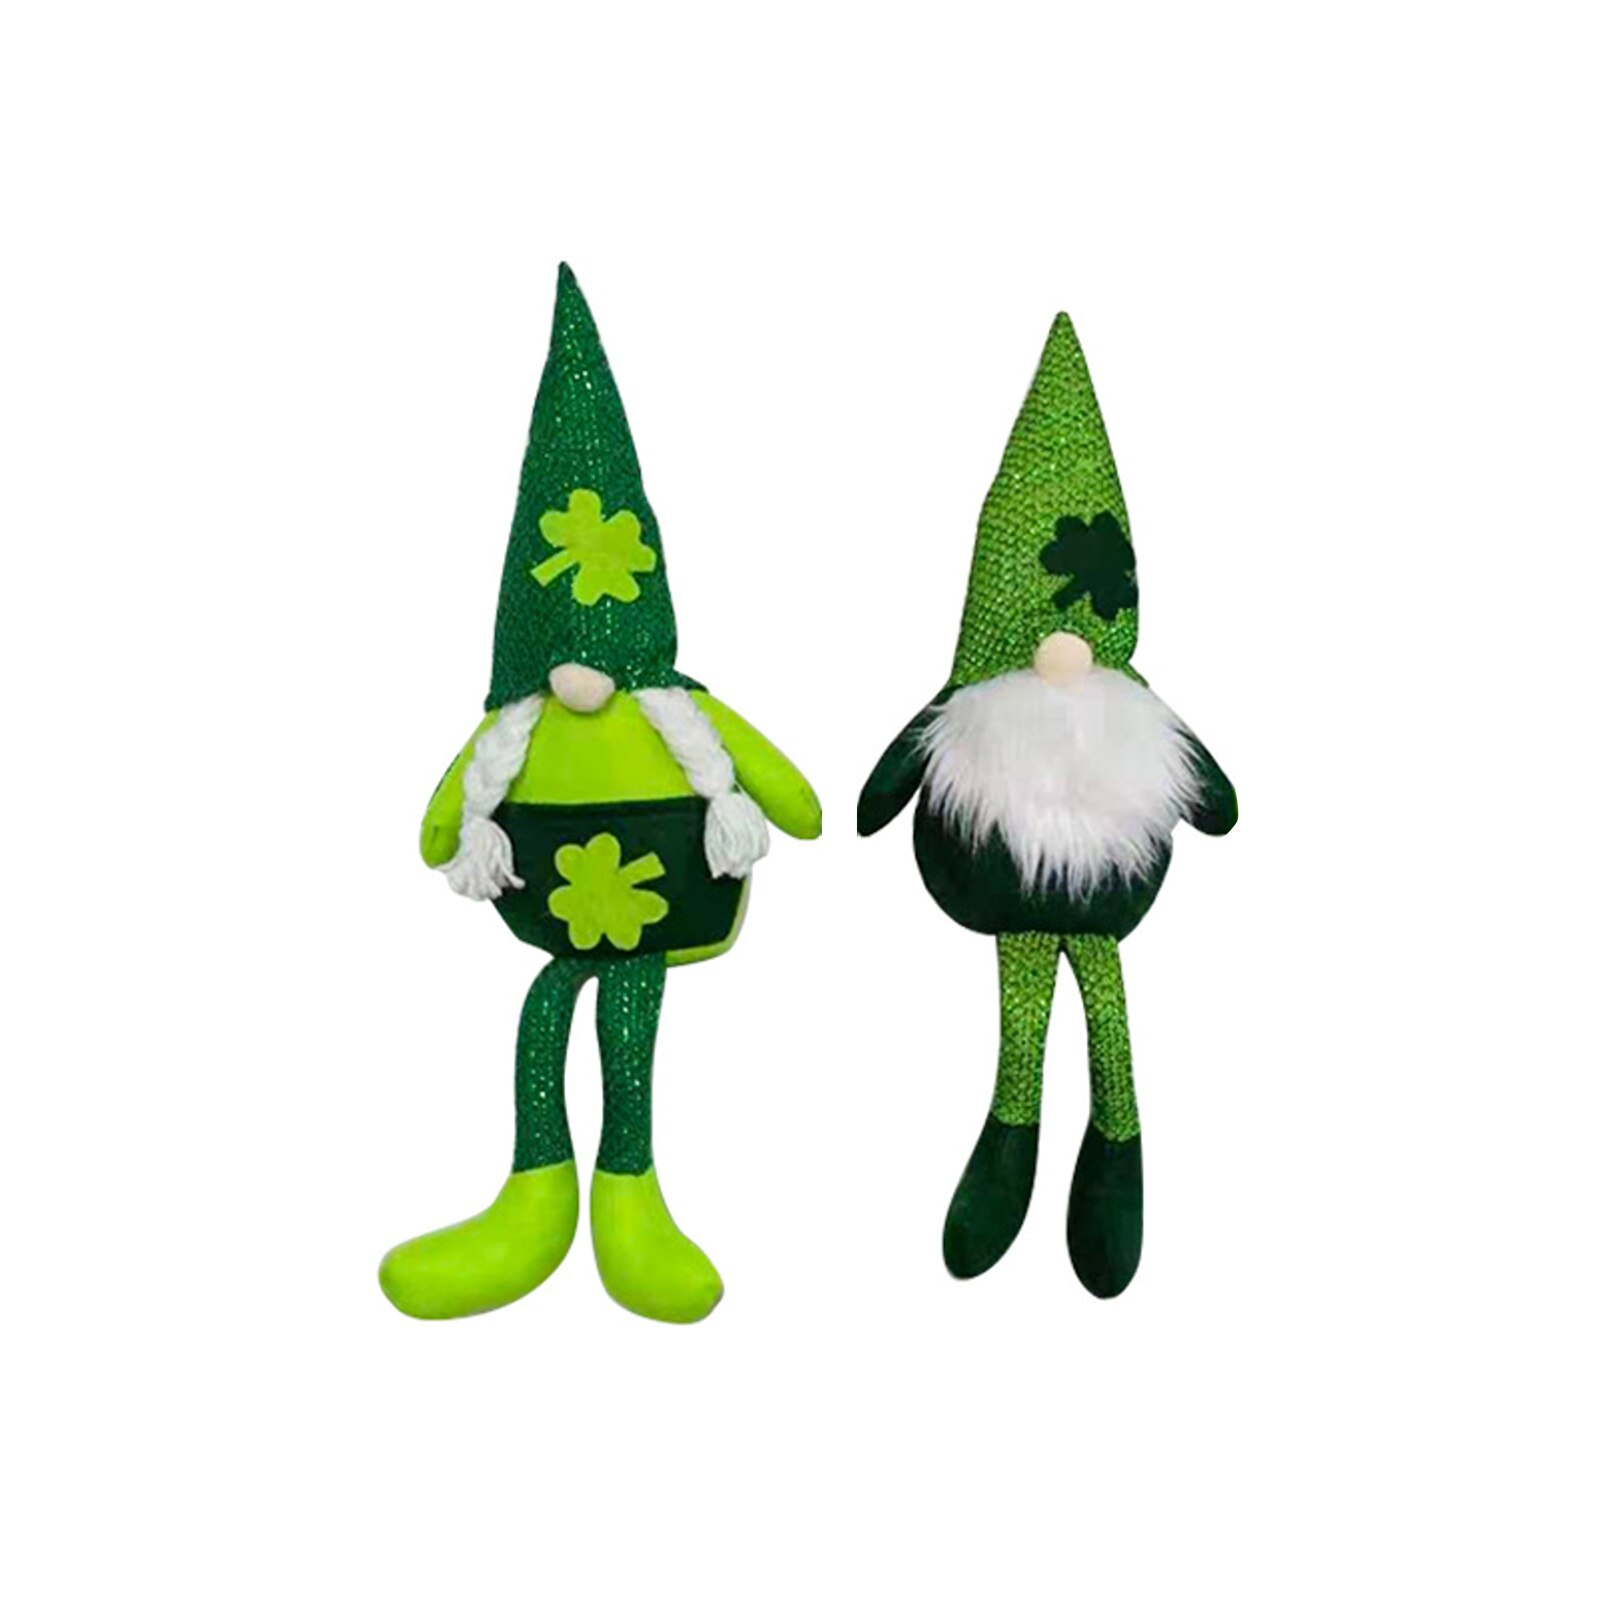 2Pcs Window Decoraties Gnome Premium Materiaal Pluche Pop St. Patrick 'S Day Faceless Groen Ornament Festival Partij Decoratie